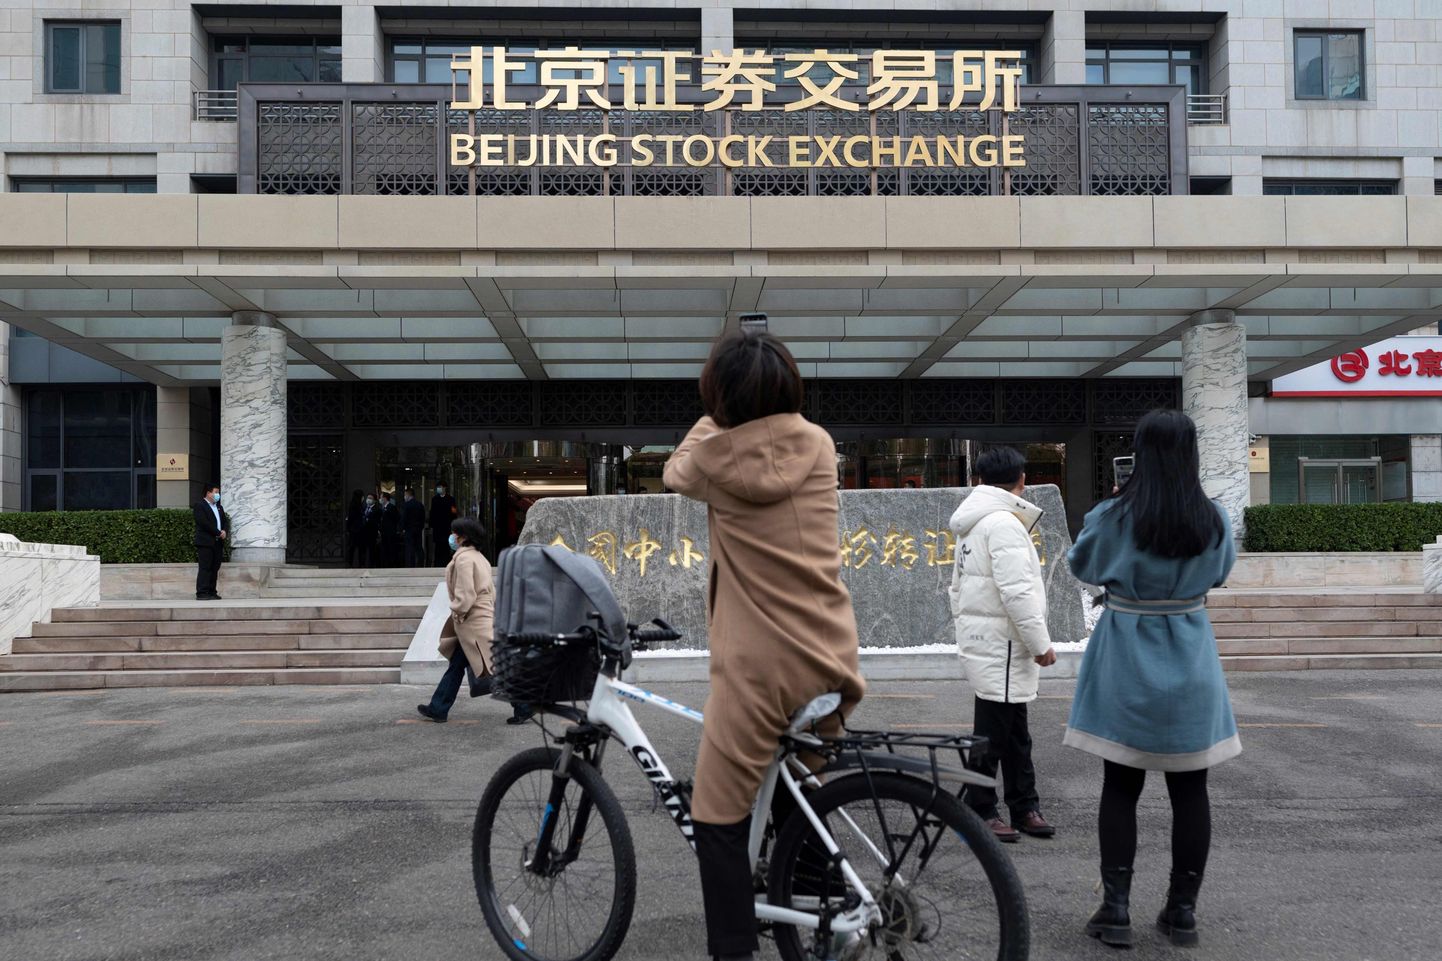 Täna algas Pekingi börsil kauplemine